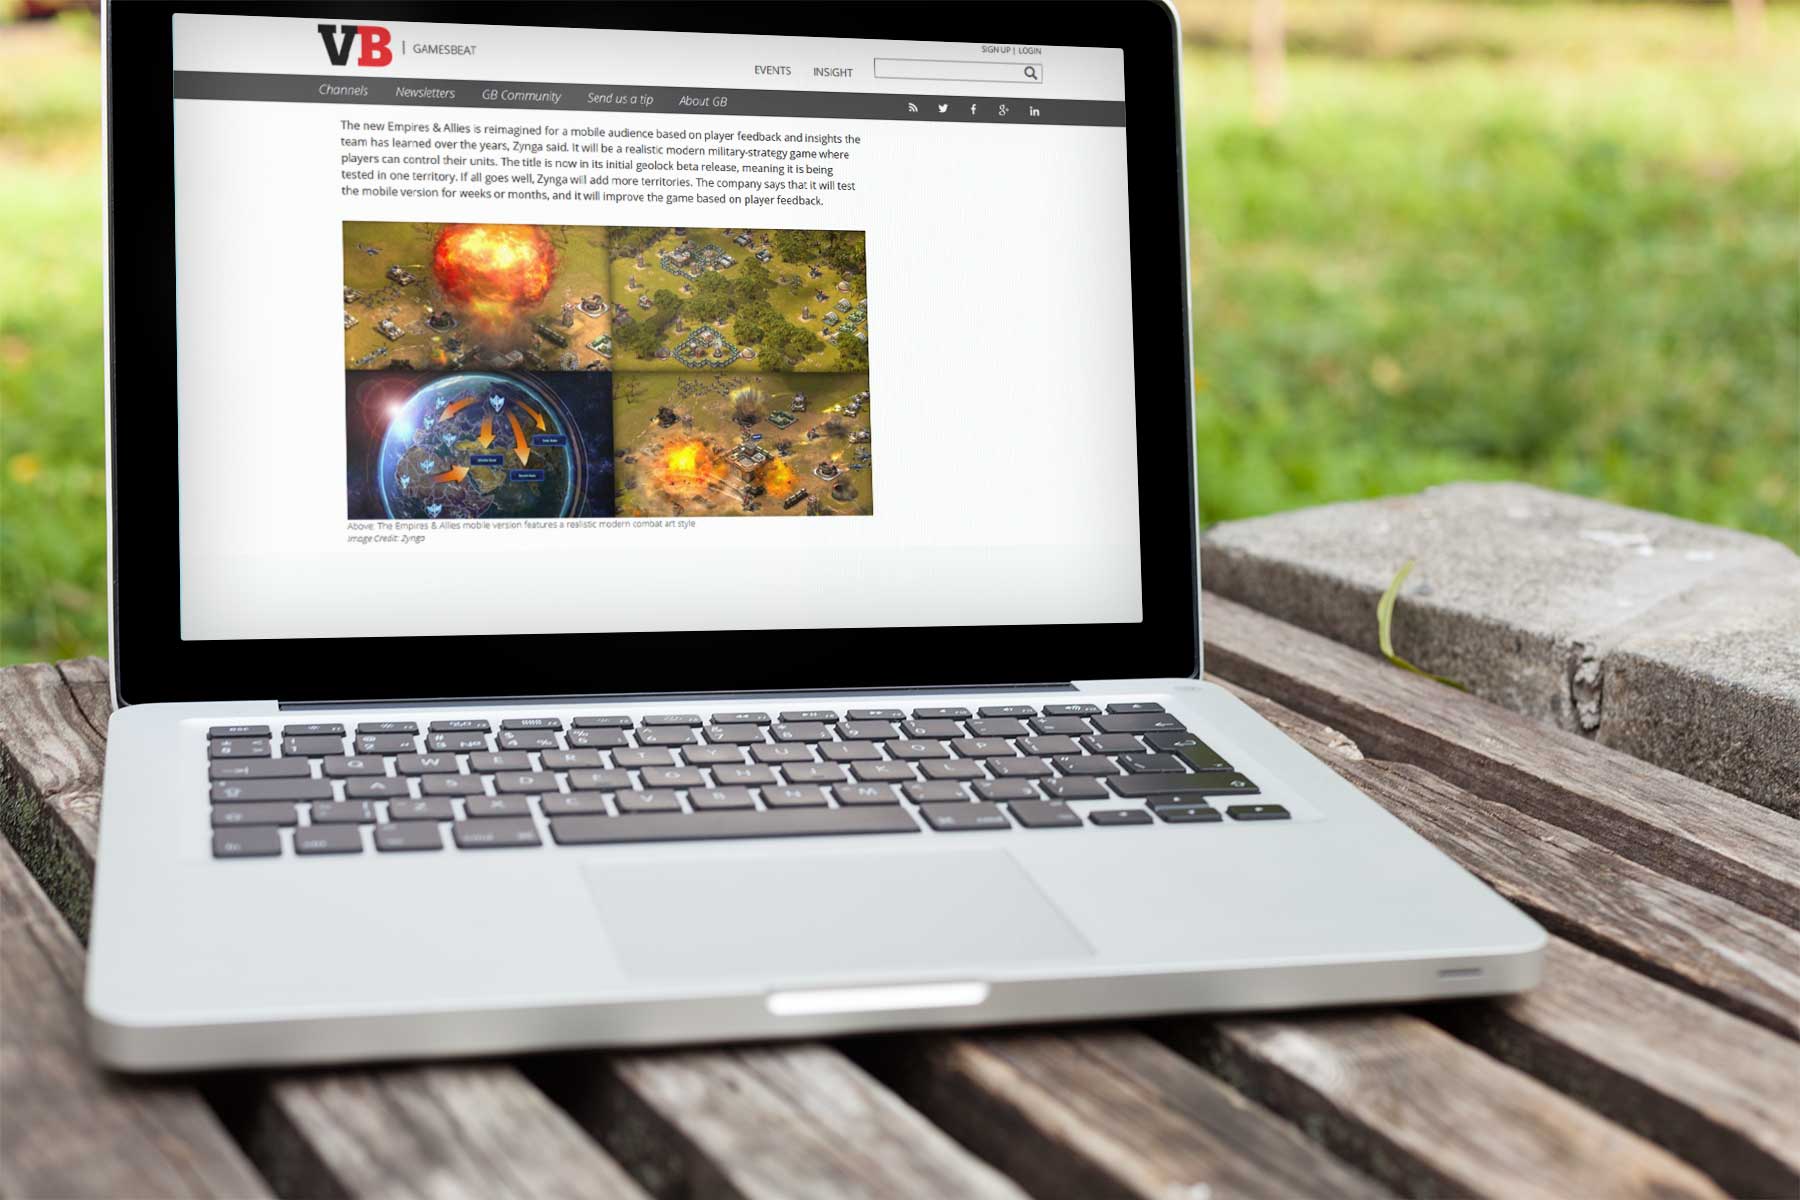 Die Seite venturebeat.com hat neue Informationen zu Empires & Allies von Zynga für mobile Geräte - Bildquelle: Venturebeat.com / Zynga